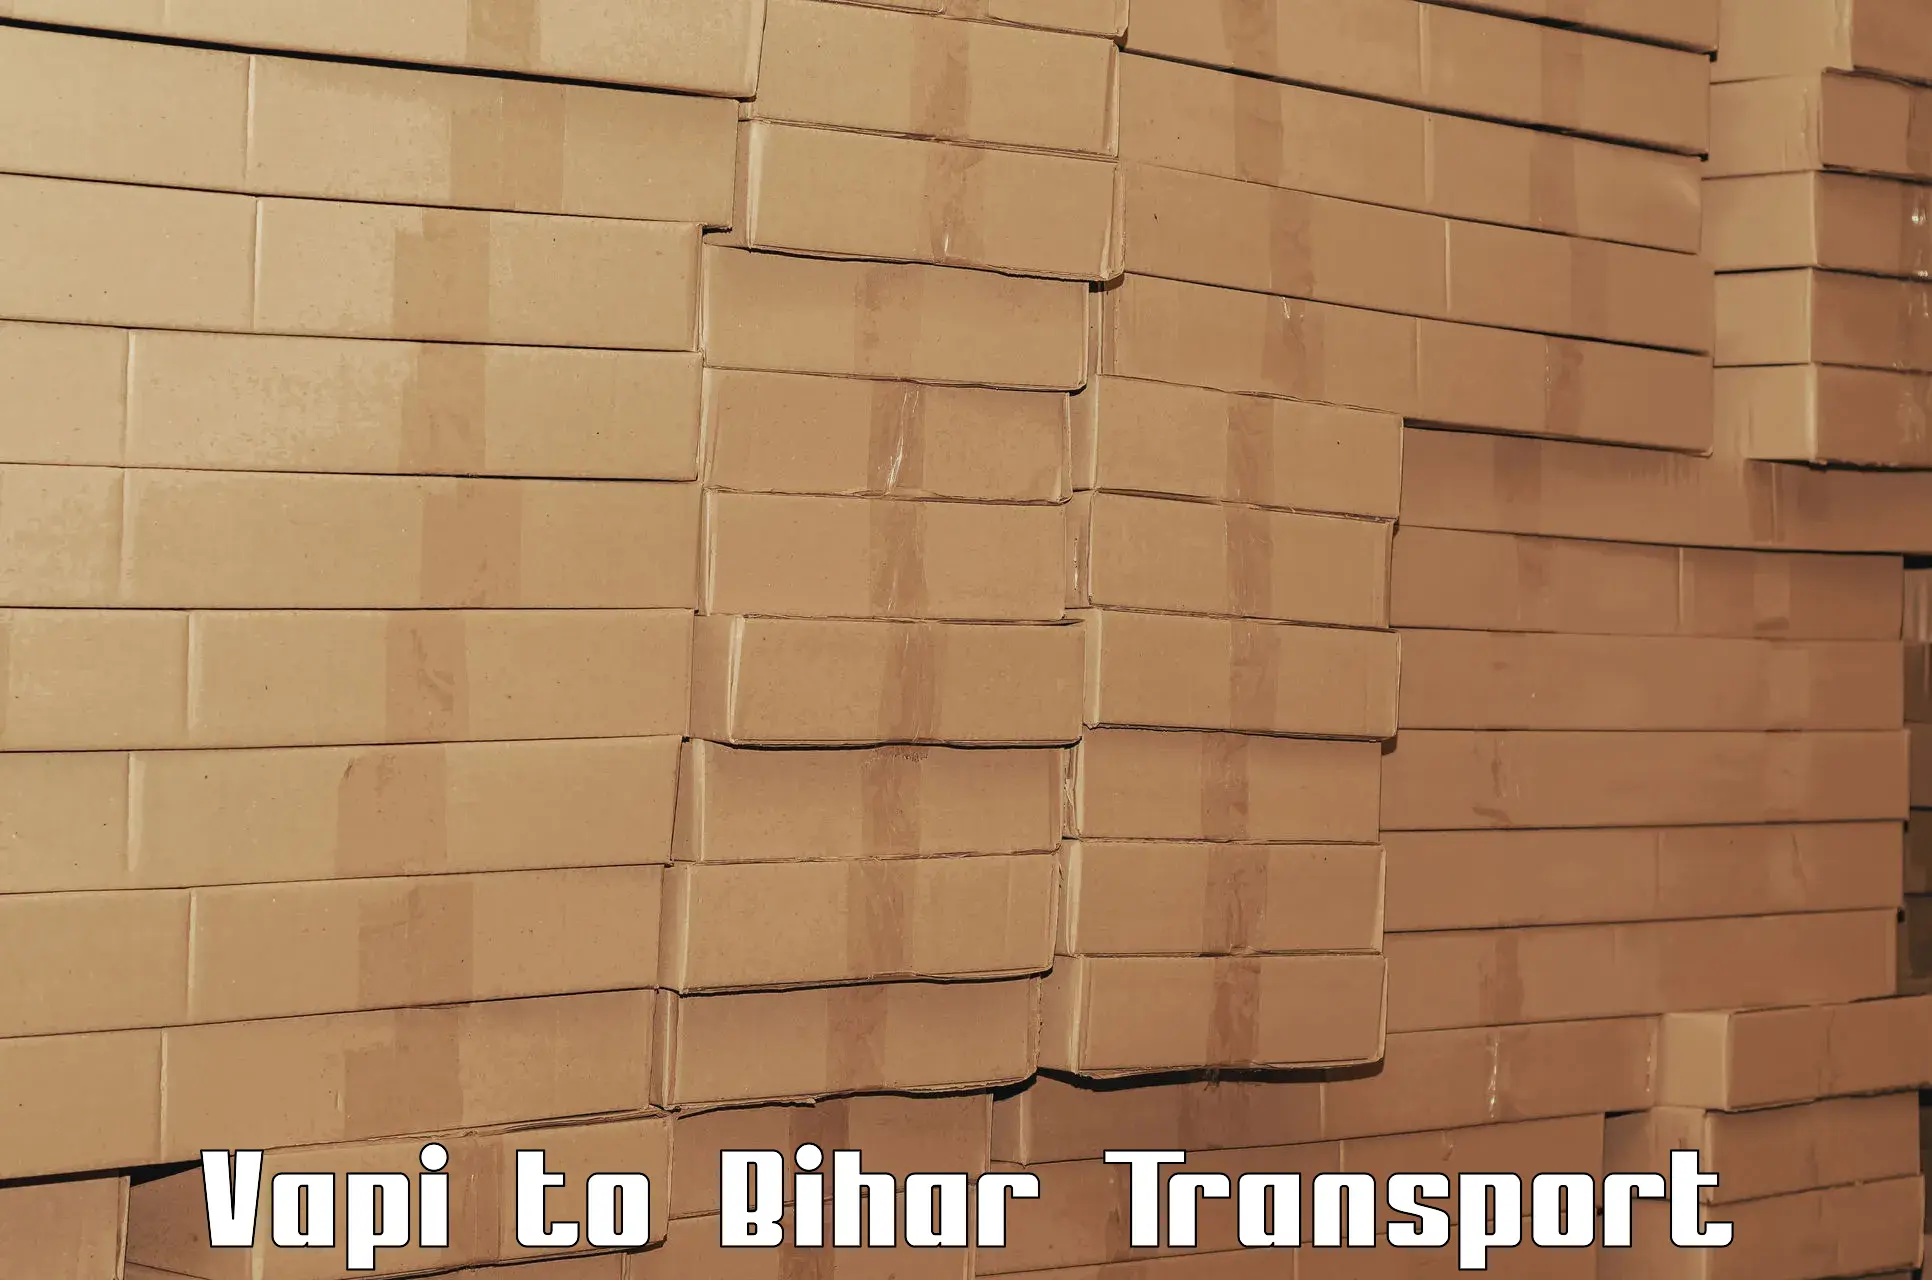 Door to door transport services Vapi to Chhapra